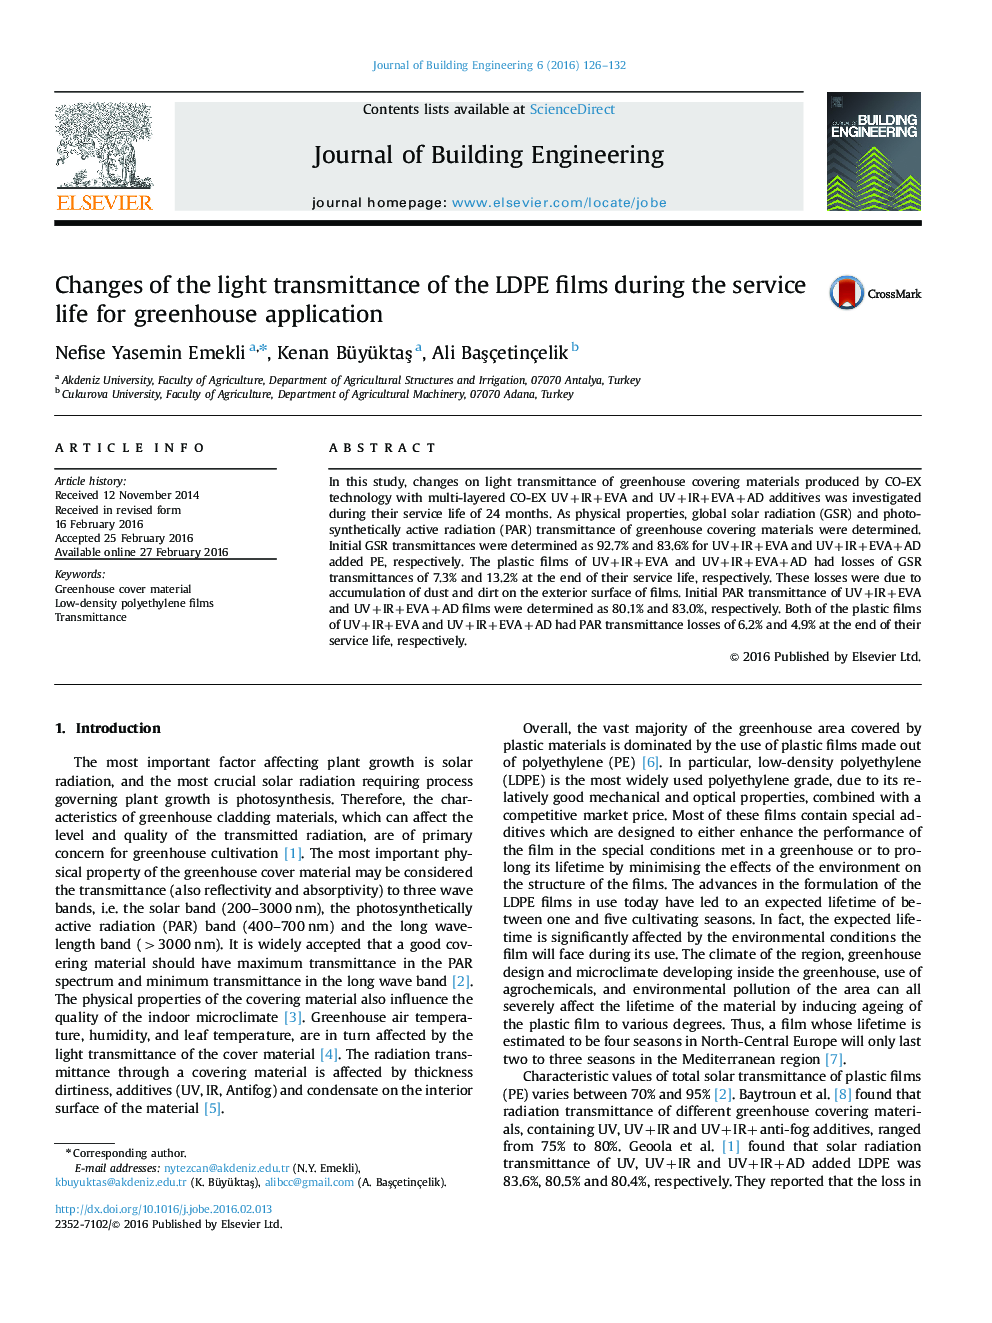 تغییرات عبور نور از فیلم های LDPE در طول عمر برای استفاده گلخانه ای